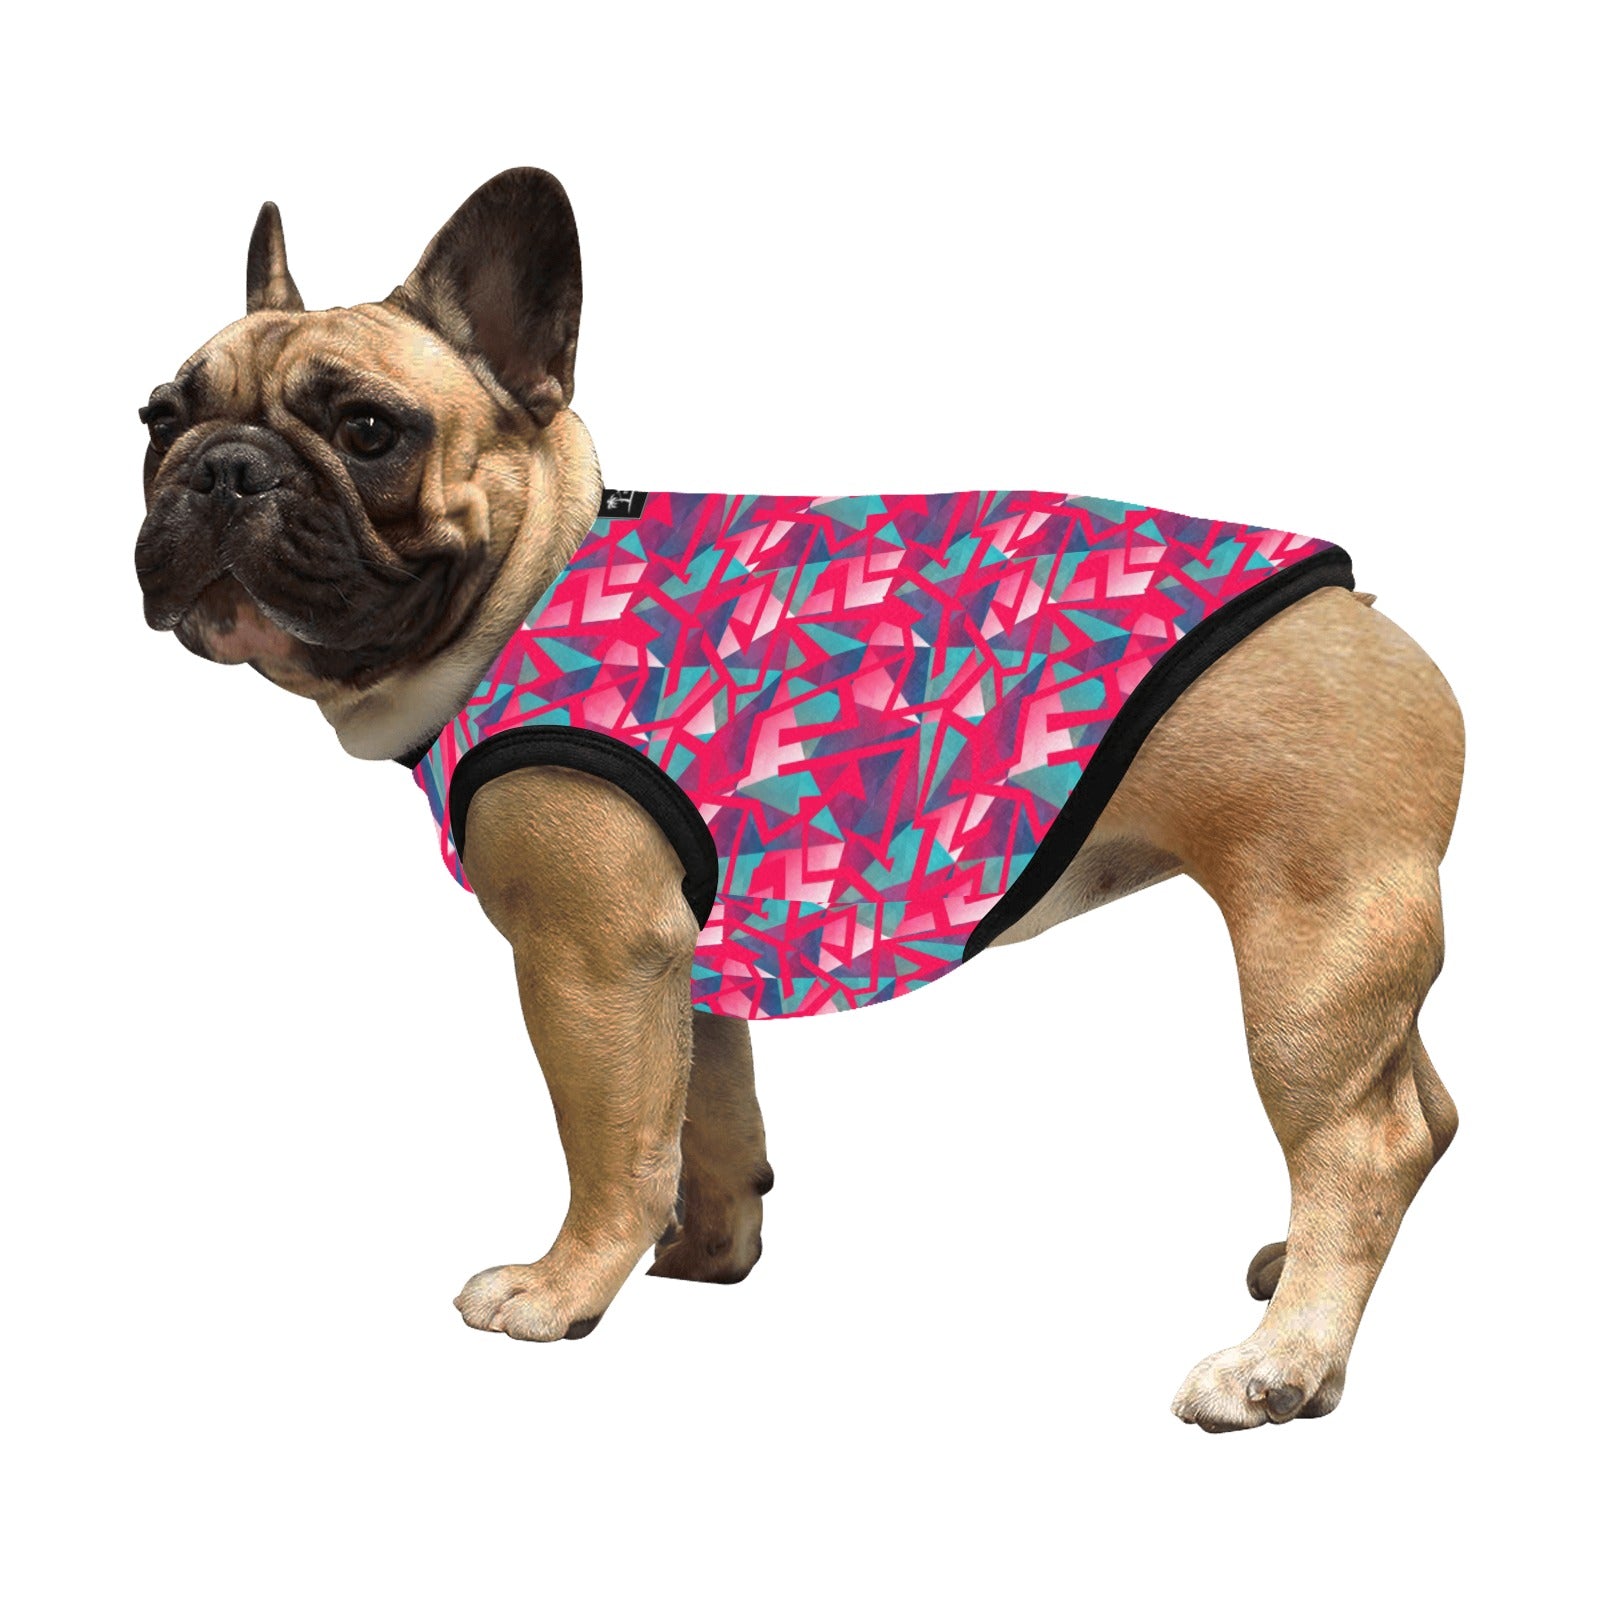 Camiseta sin mangas ligera para mascotas con estampado integral - Neón geométrico en color baya